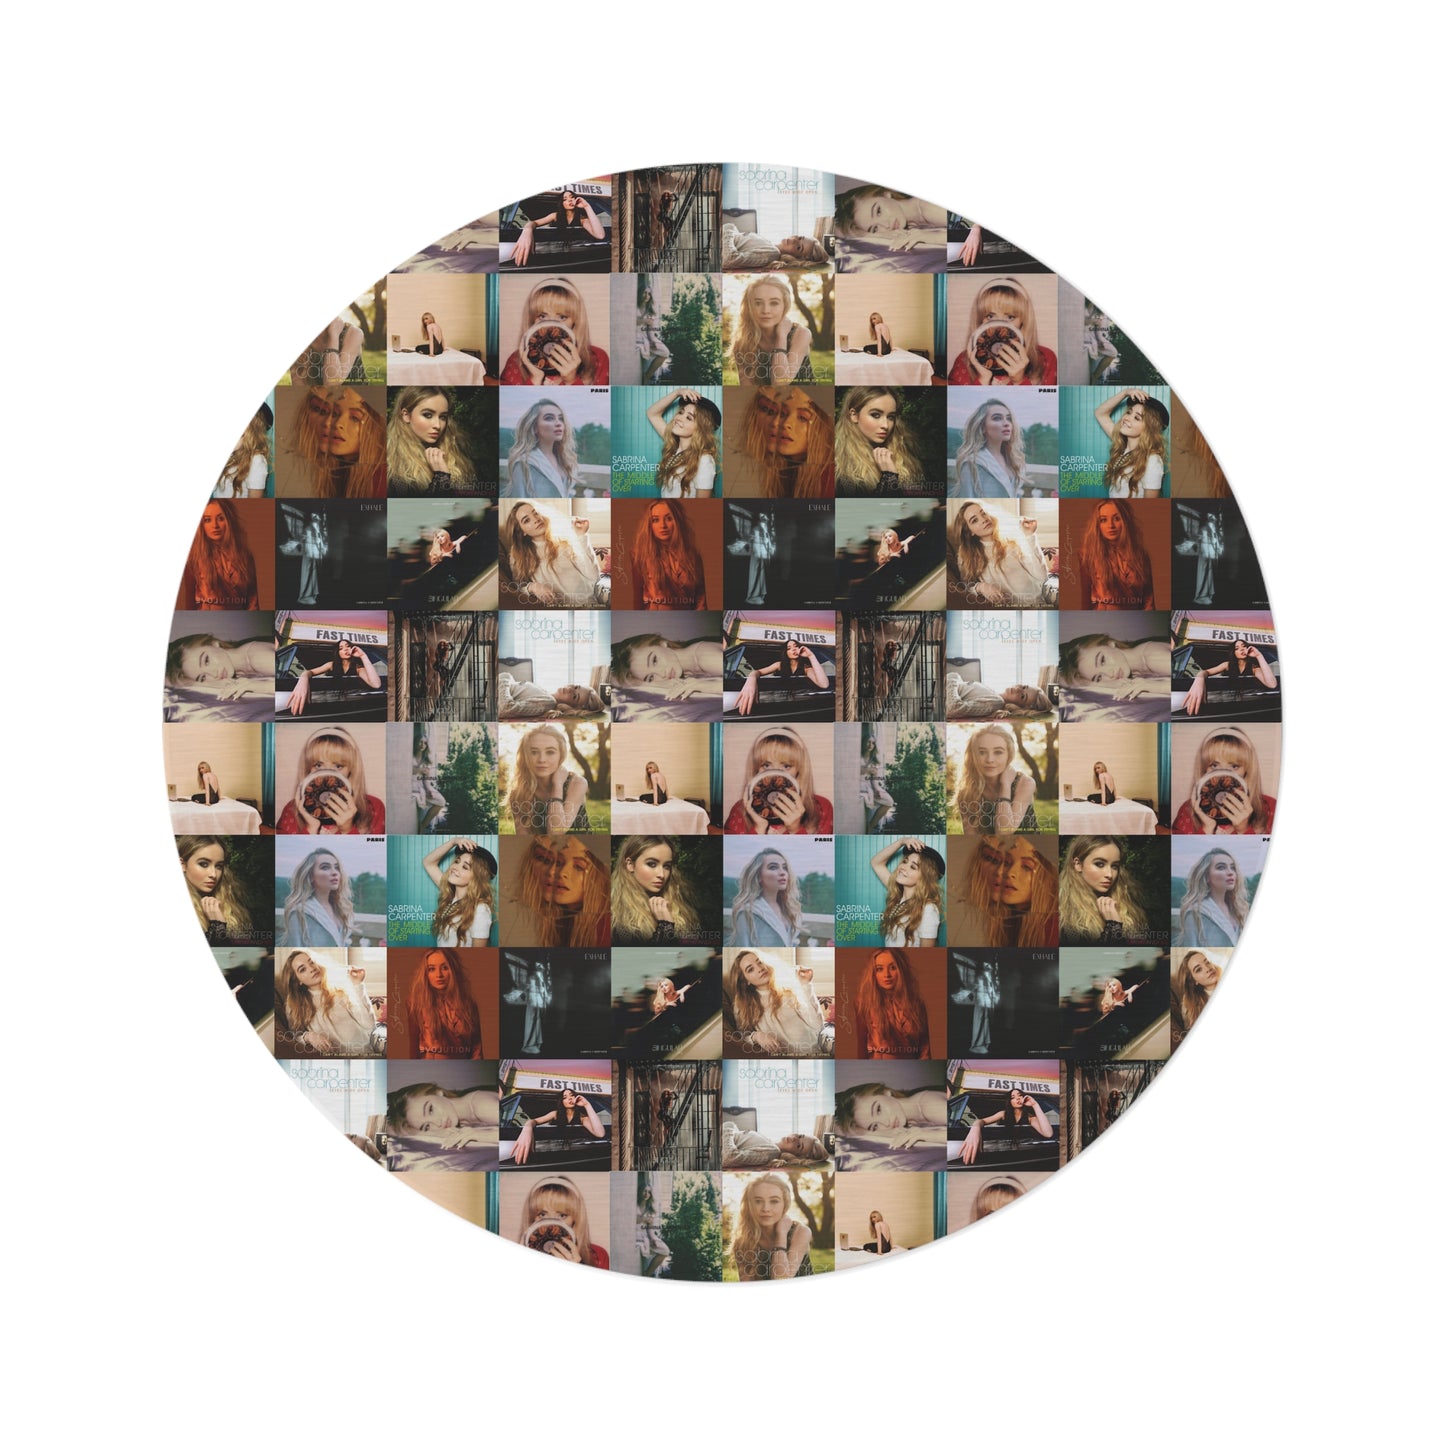 Sabrina Carpenter Album Cover Collage Round Rug